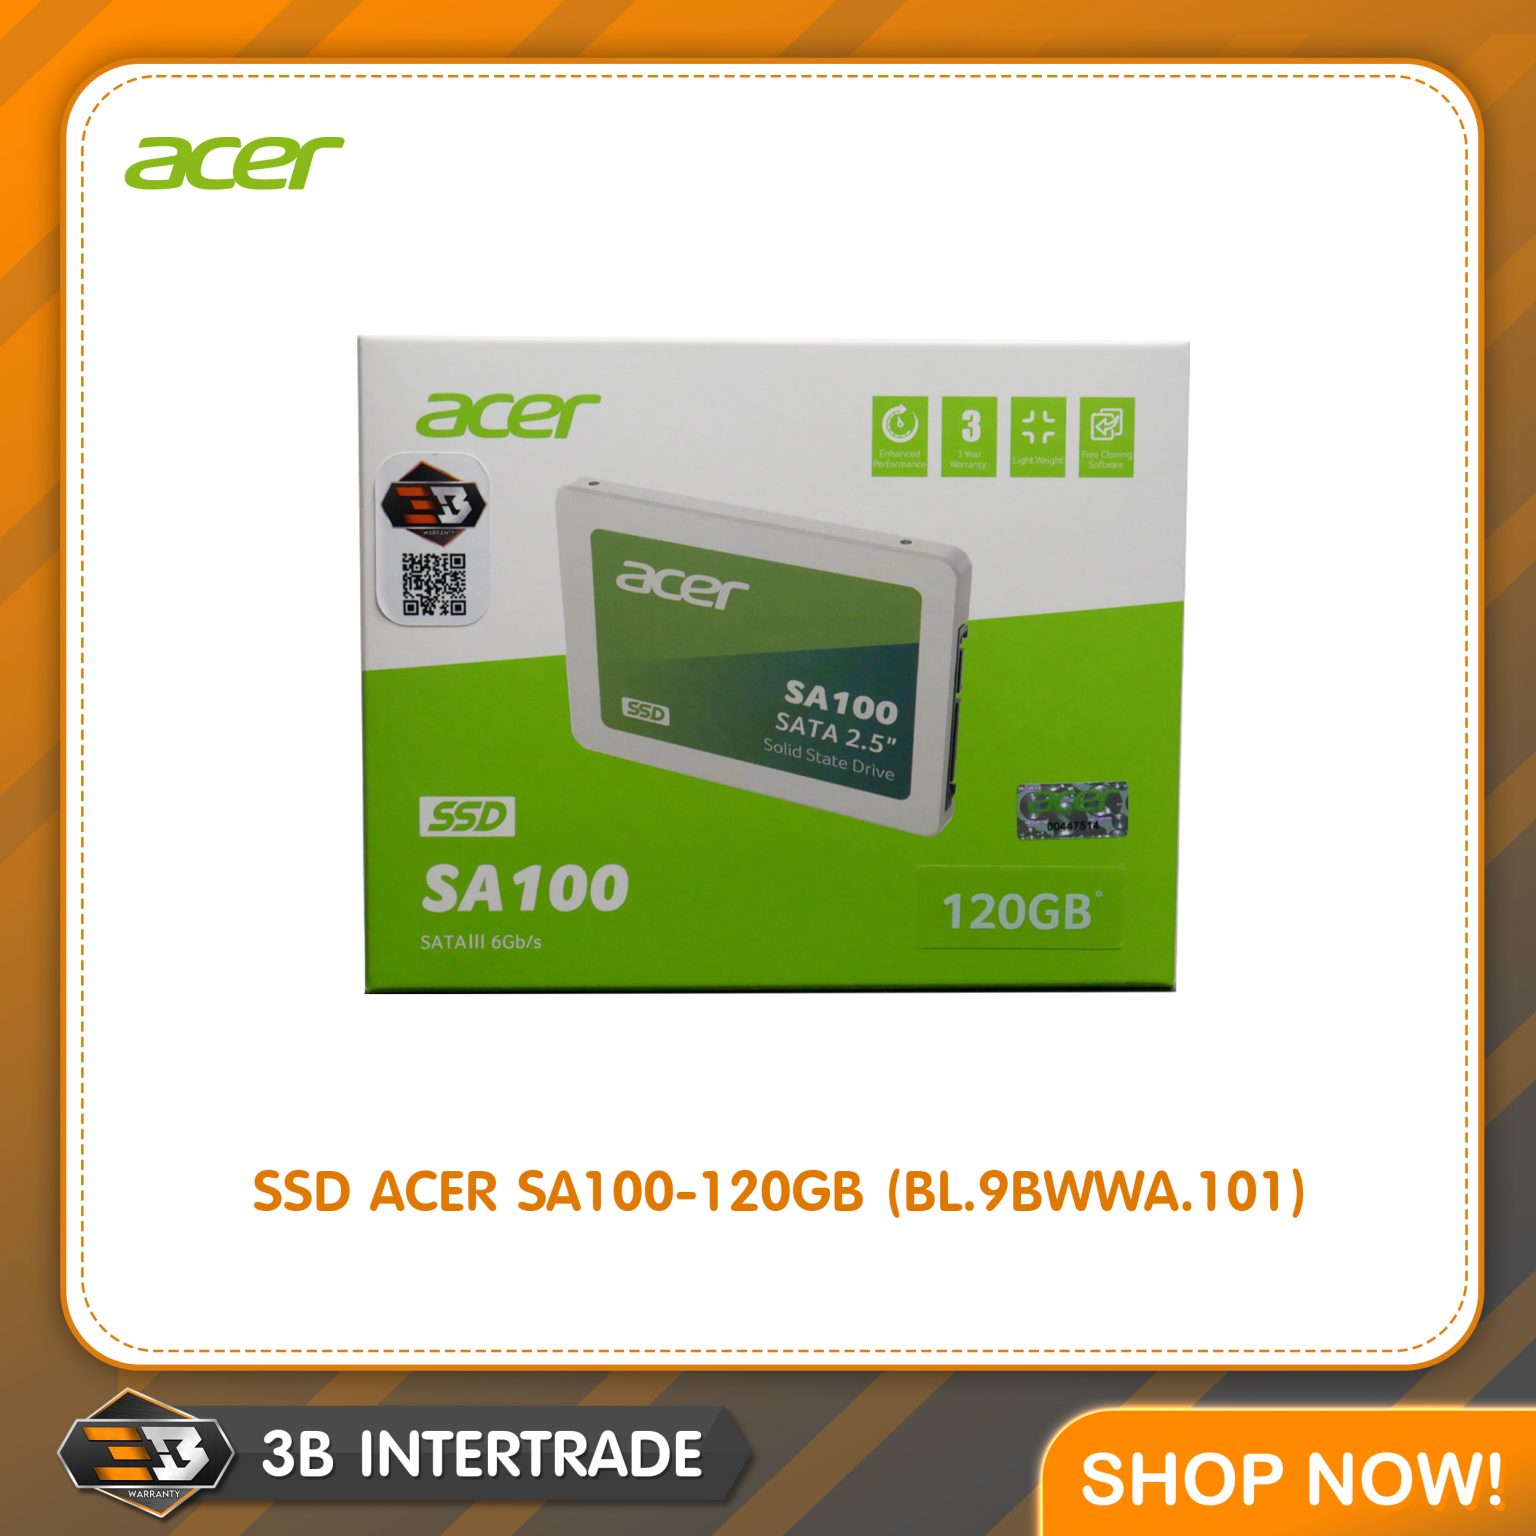 SSD ACER SA100-120GB (BL.9BWWA.101)